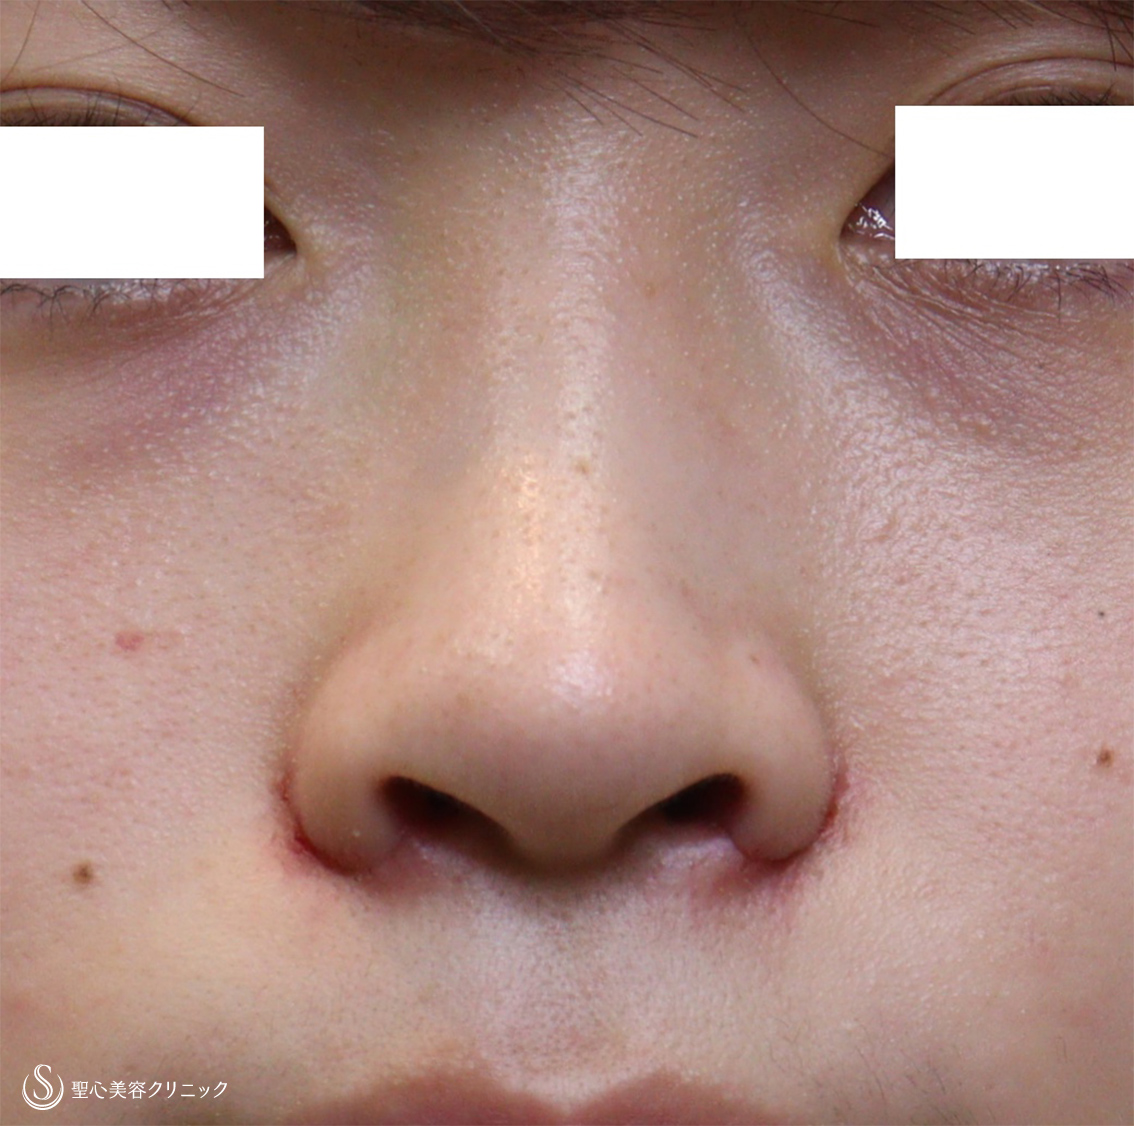 代女性 鼻の穴を目立たなく 小鼻縮小 1週間後 症例写真 美容整形 美容外科なら聖心美容クリニック